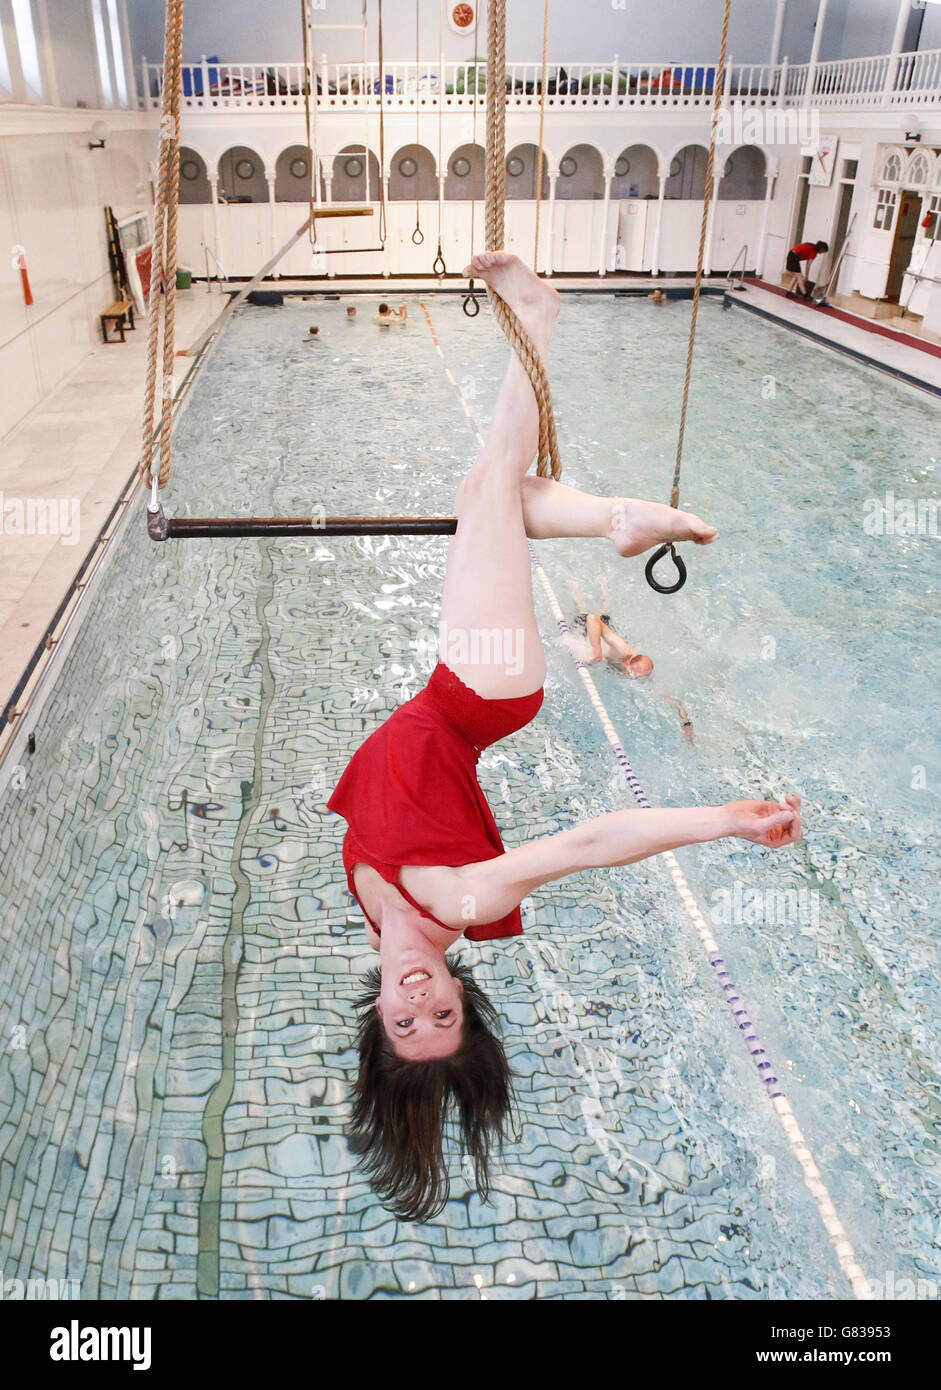 Danuta Ramos vom All or Nothing Aerial Dance Theatre tritt auf einem Trapez über einem Swimmingpool im Western Baths Club in Glasgow auf, bevor das Unternehmen seine neue Tourenshow Three's A Crowd vorstellt. Stockfoto